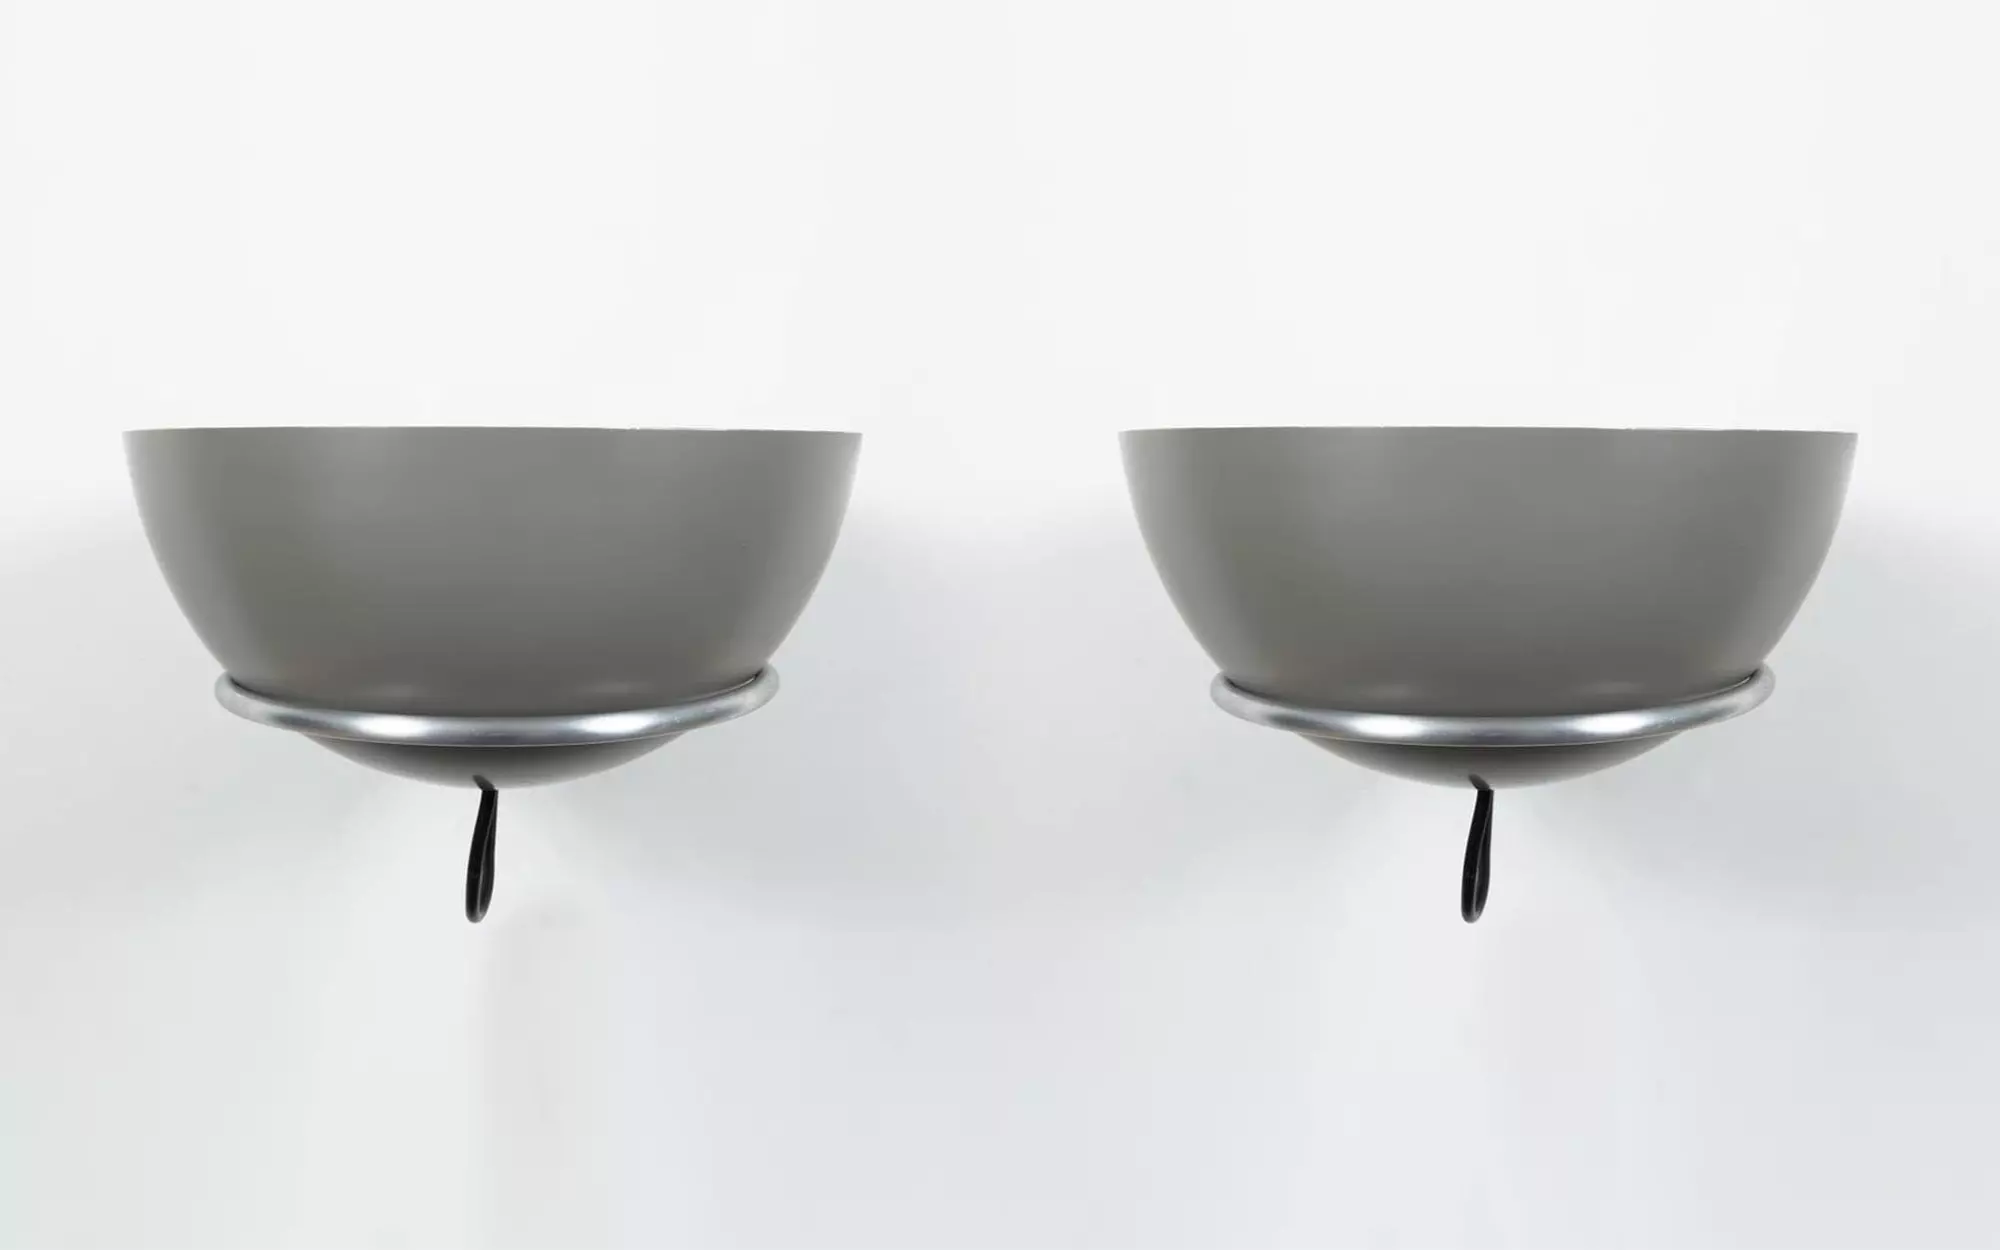 2/2 - Gino Sarfatti - Table light - Galerie kreo